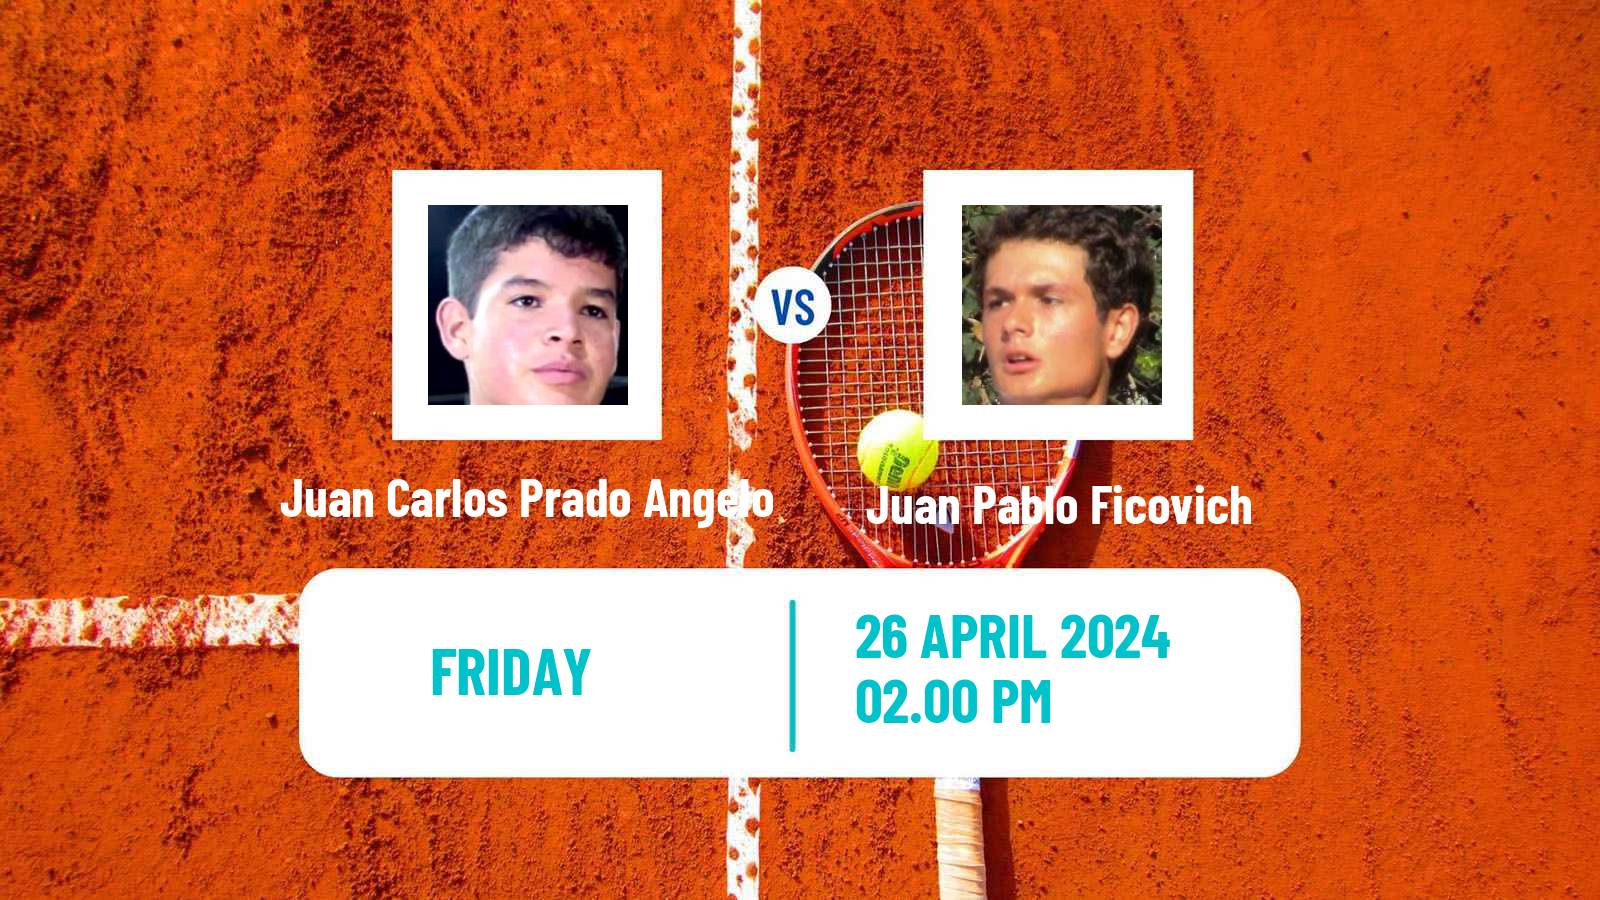 Tennis Concepcion Challenger Men Juan Carlos Prado Angelo - Juan Pablo Ficovich